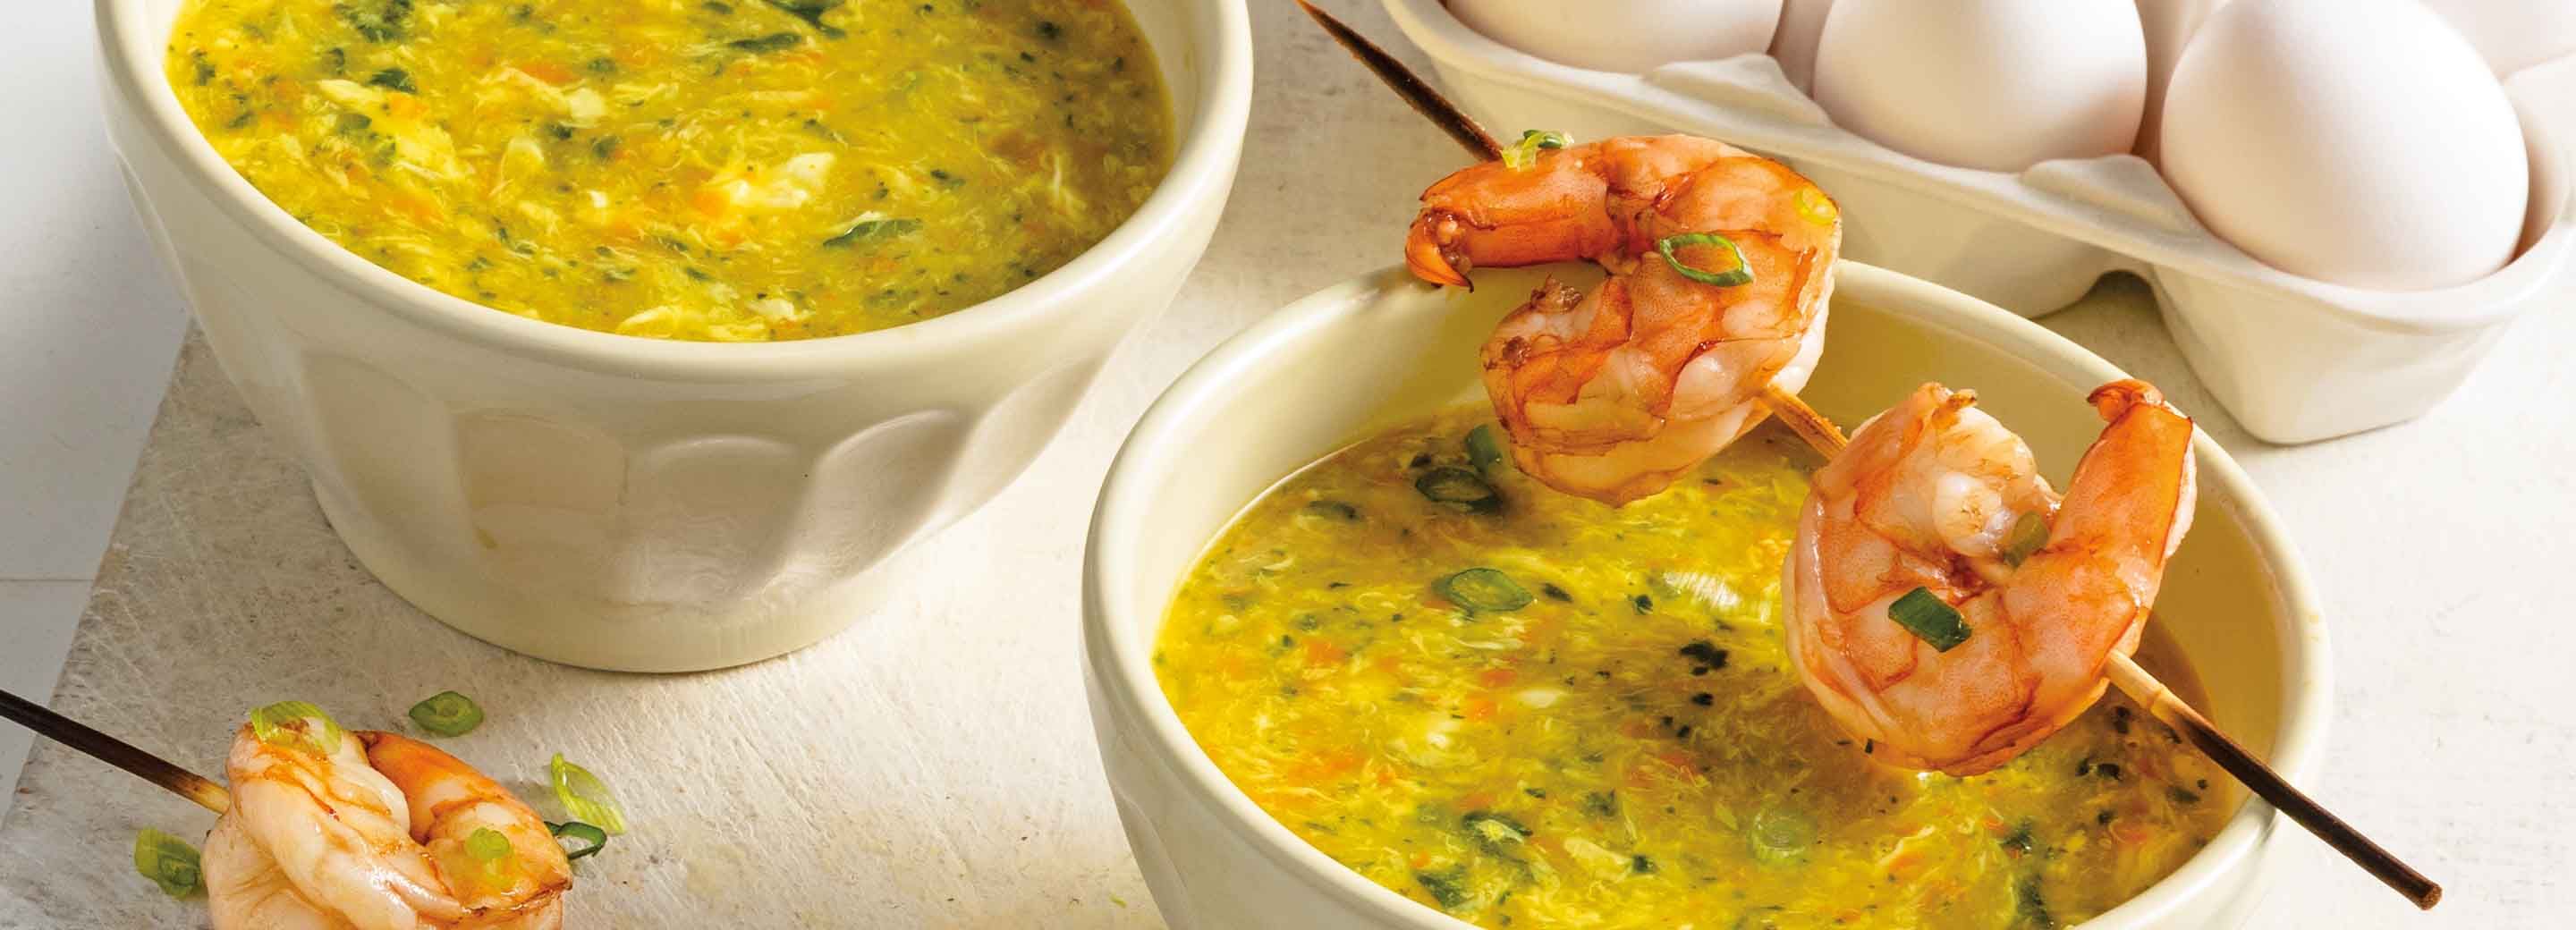 Shrimp & Egg Drop Soup